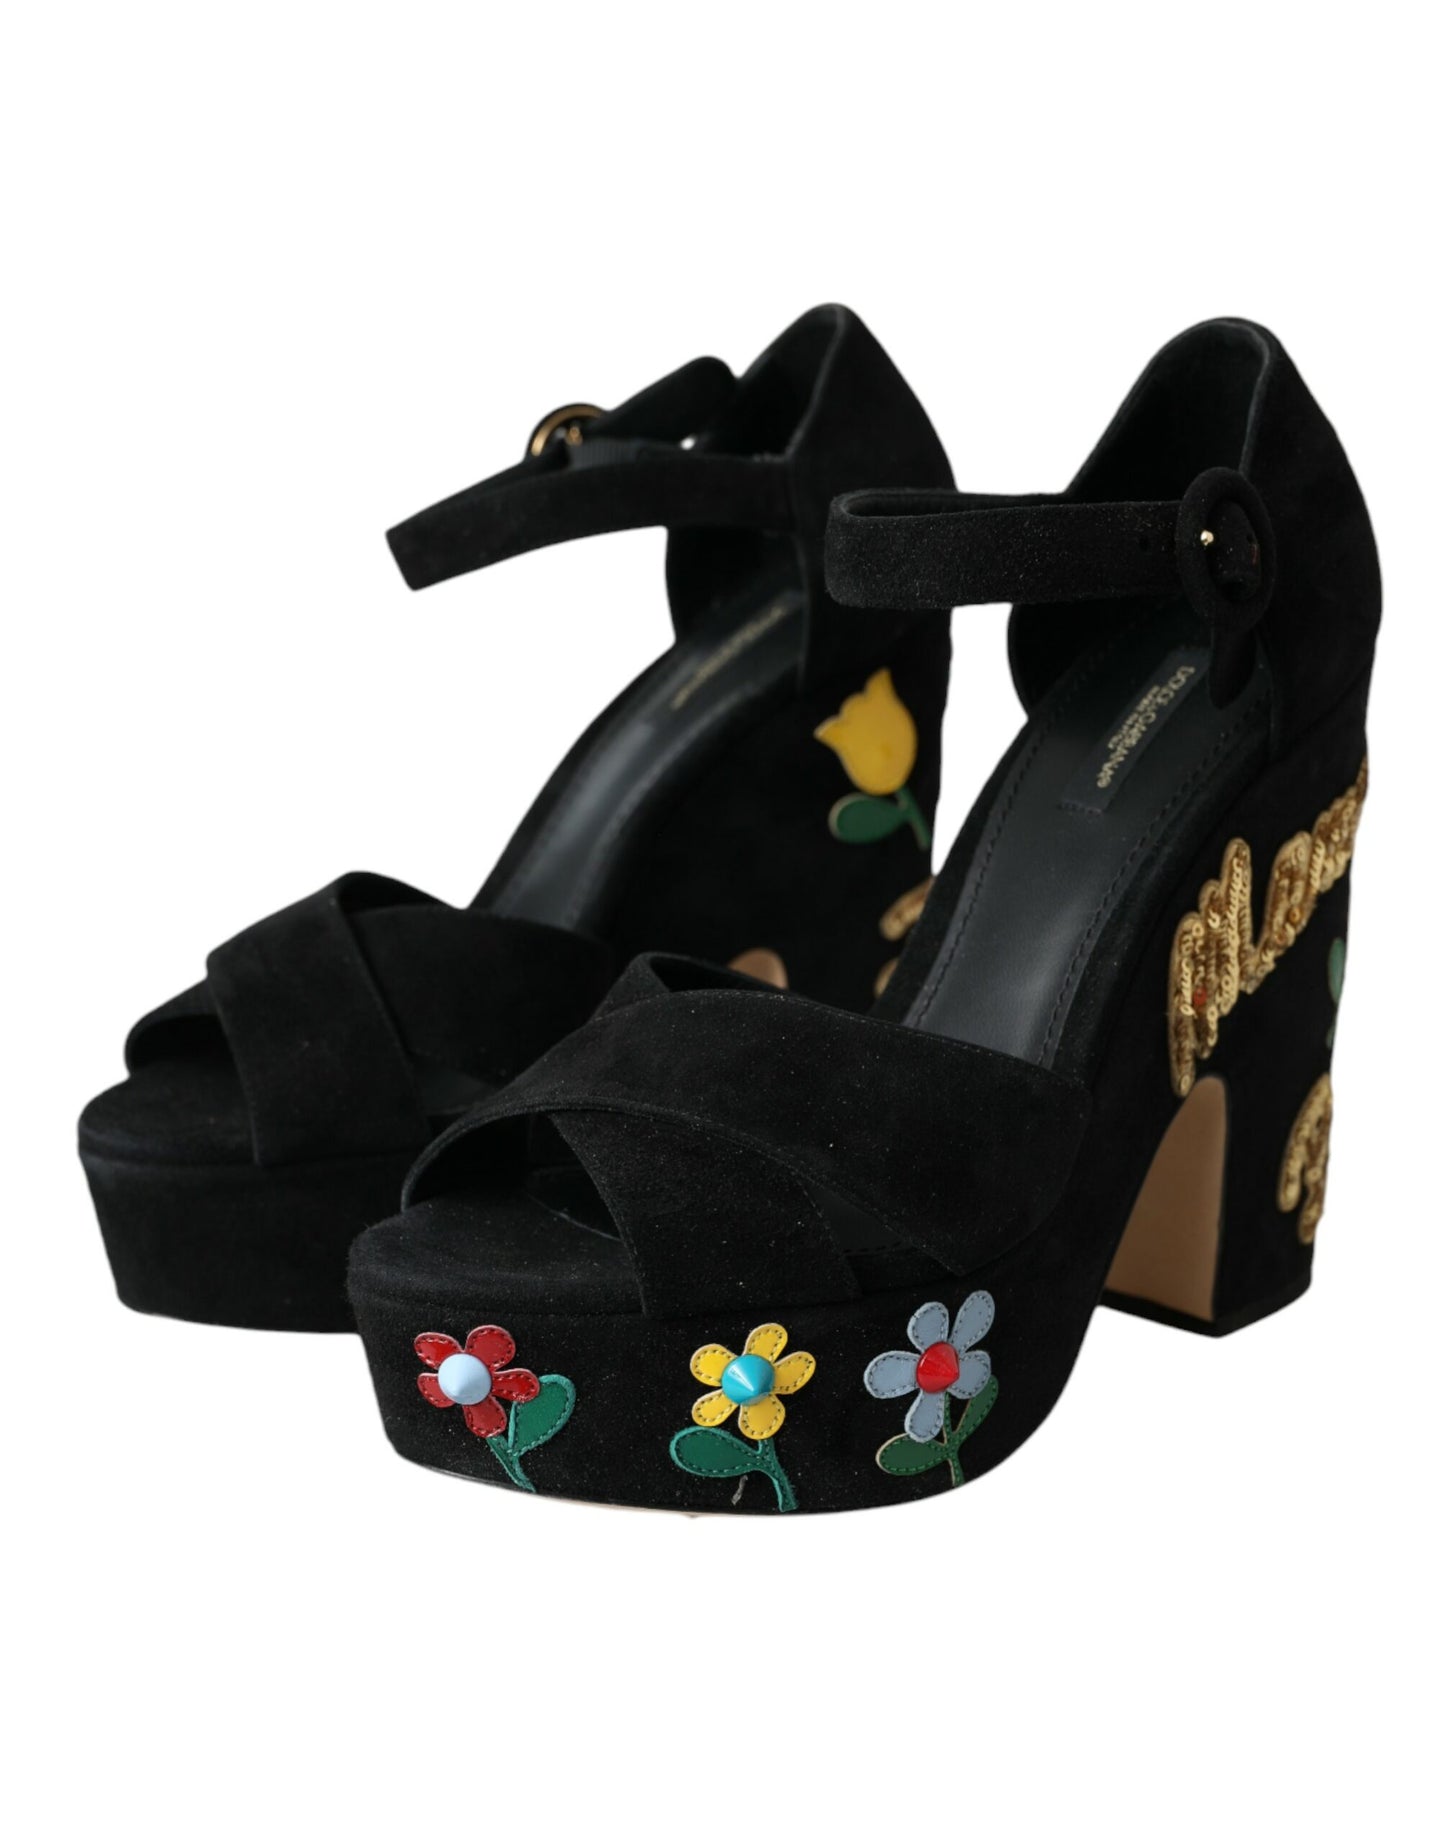 Dolce & Gabbana Black Floral Ankle Strap Heels Sandals Shoes